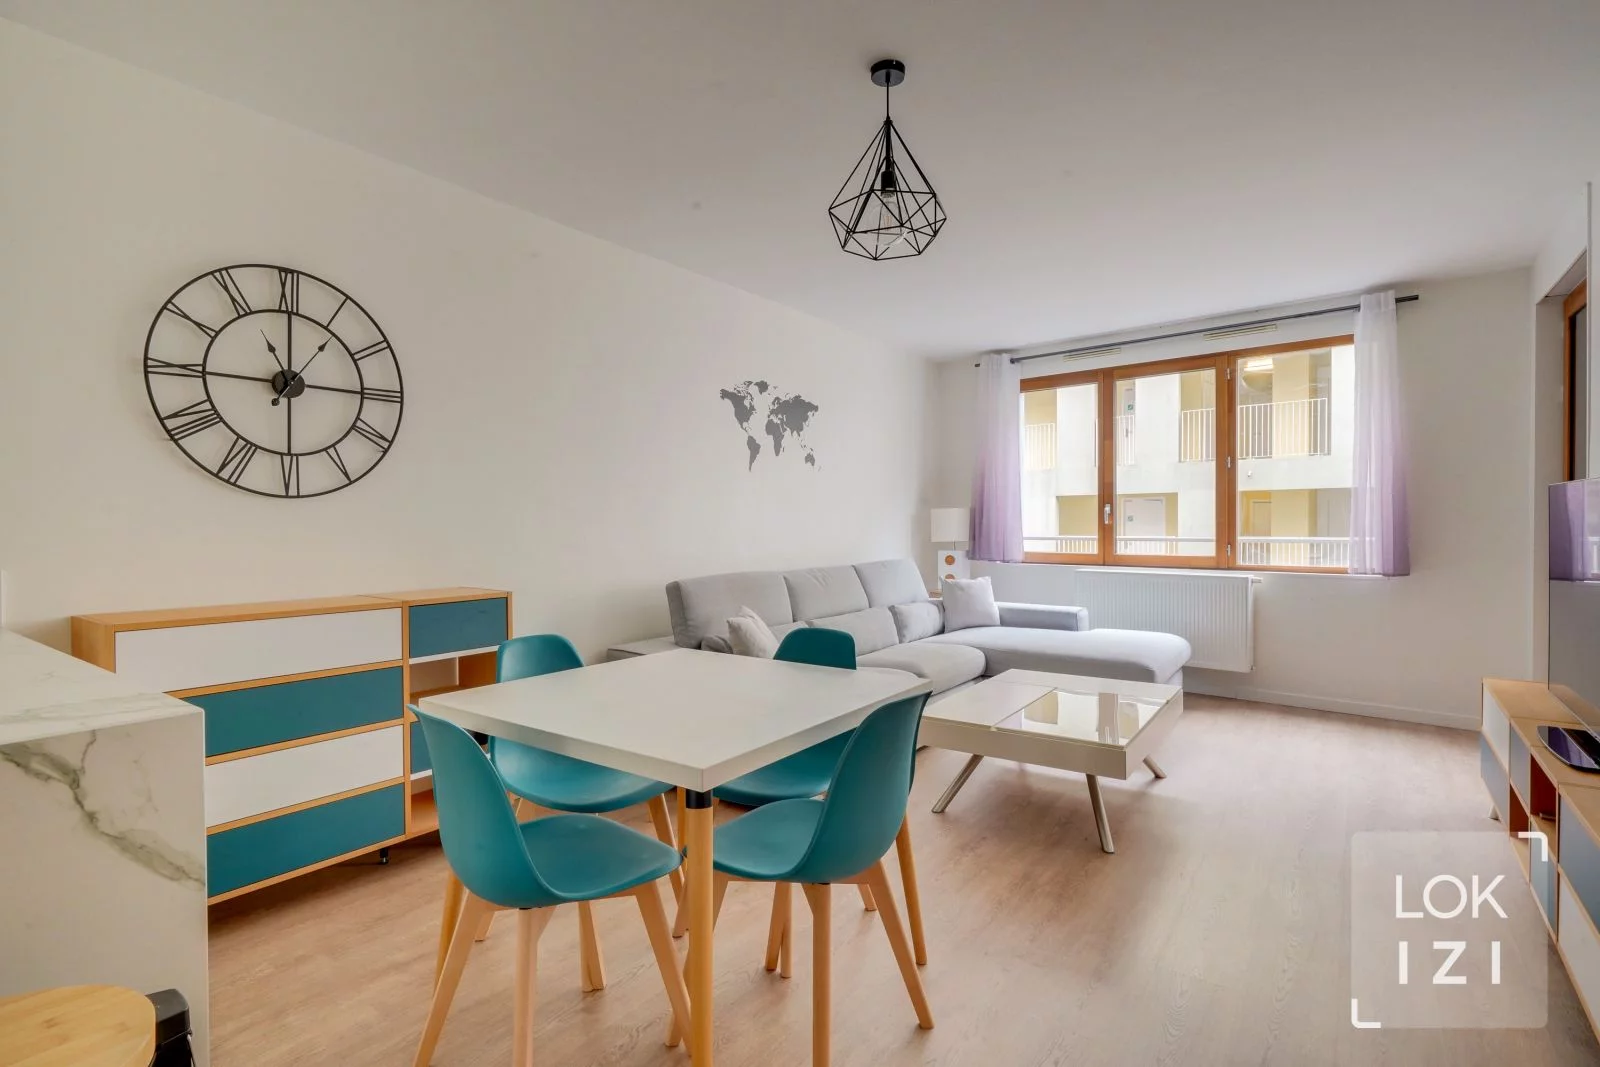 Location appartement meublé 3 pièces 64m² (Bordeaux - Chartrons)